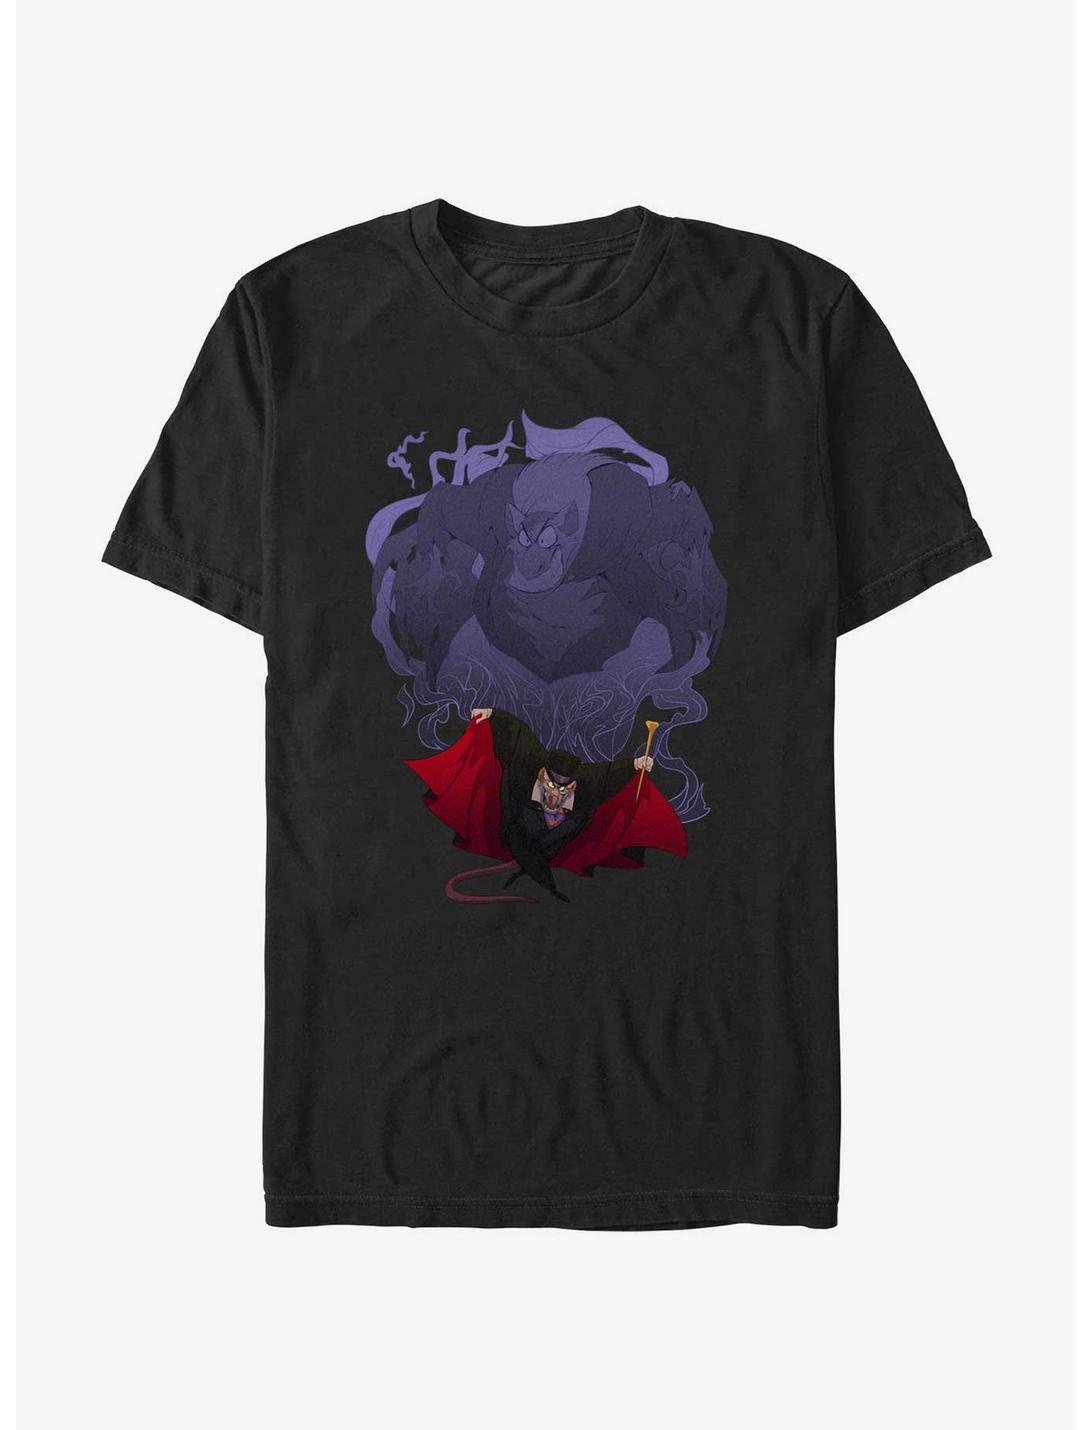 Disney The Great Mouse Detective Professor Ratigan Villainous Stench T-Shirt, BLACK, hi-res